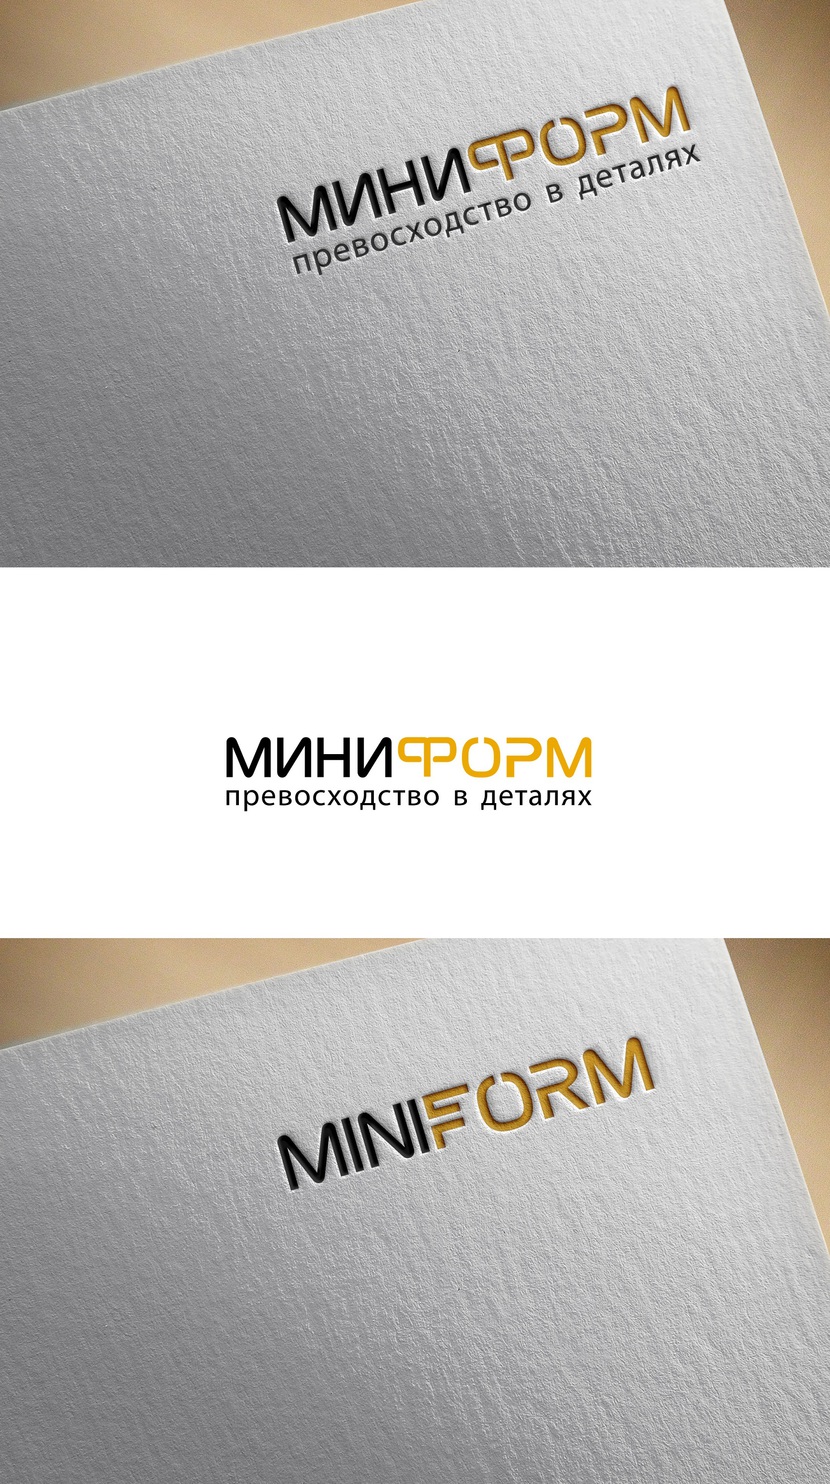 Логотип и фирменный стиль для разработчика и производителя комплектующих для офисной мебели MINIFORM  работа №270662